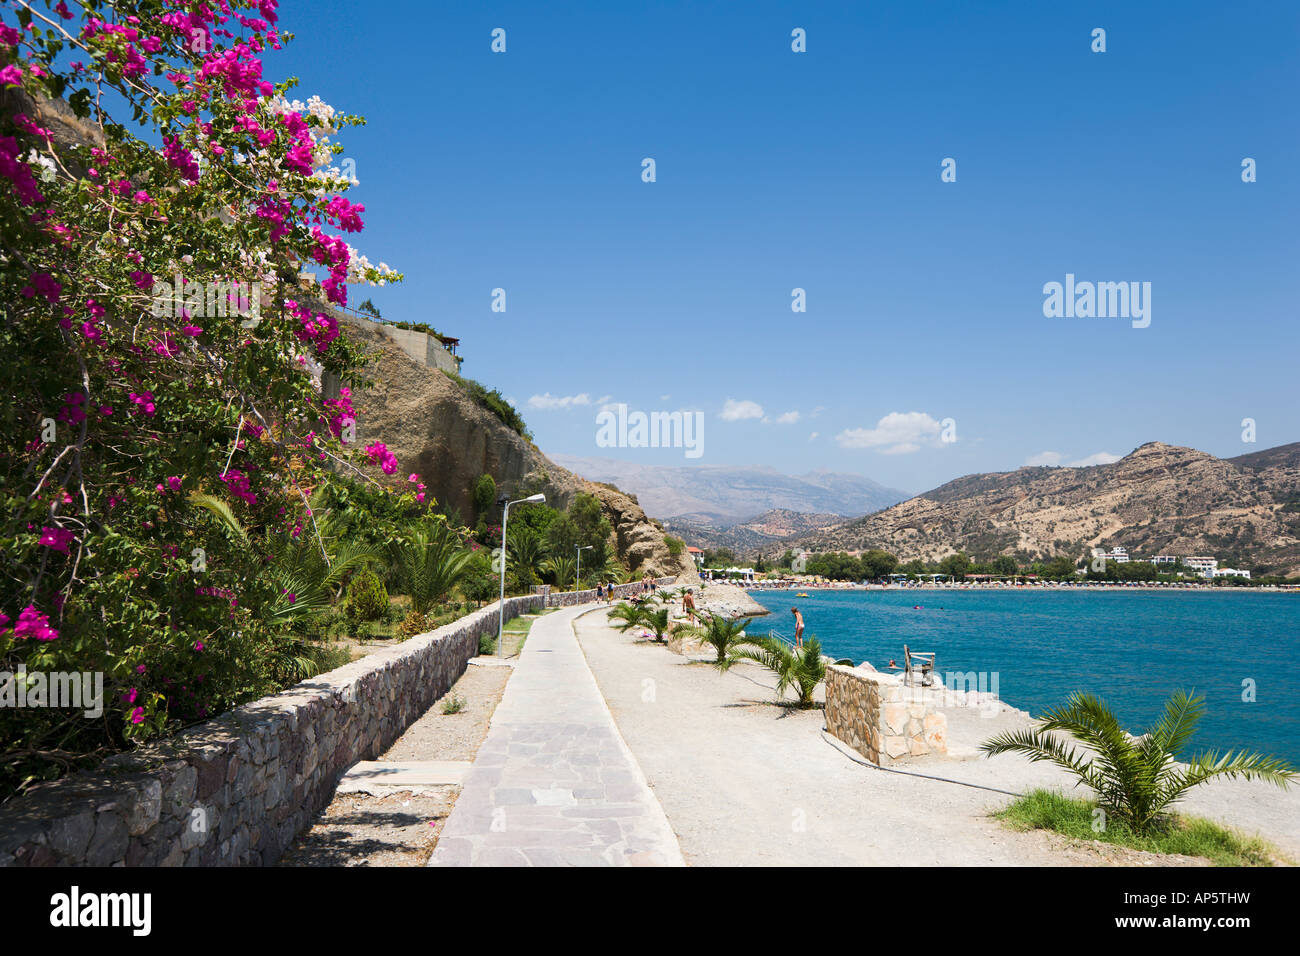 La passeggiata sul lungomare che conduce alla spiaggia, Aghia Galini, South Coast, Creta, Grecia Foto Stock